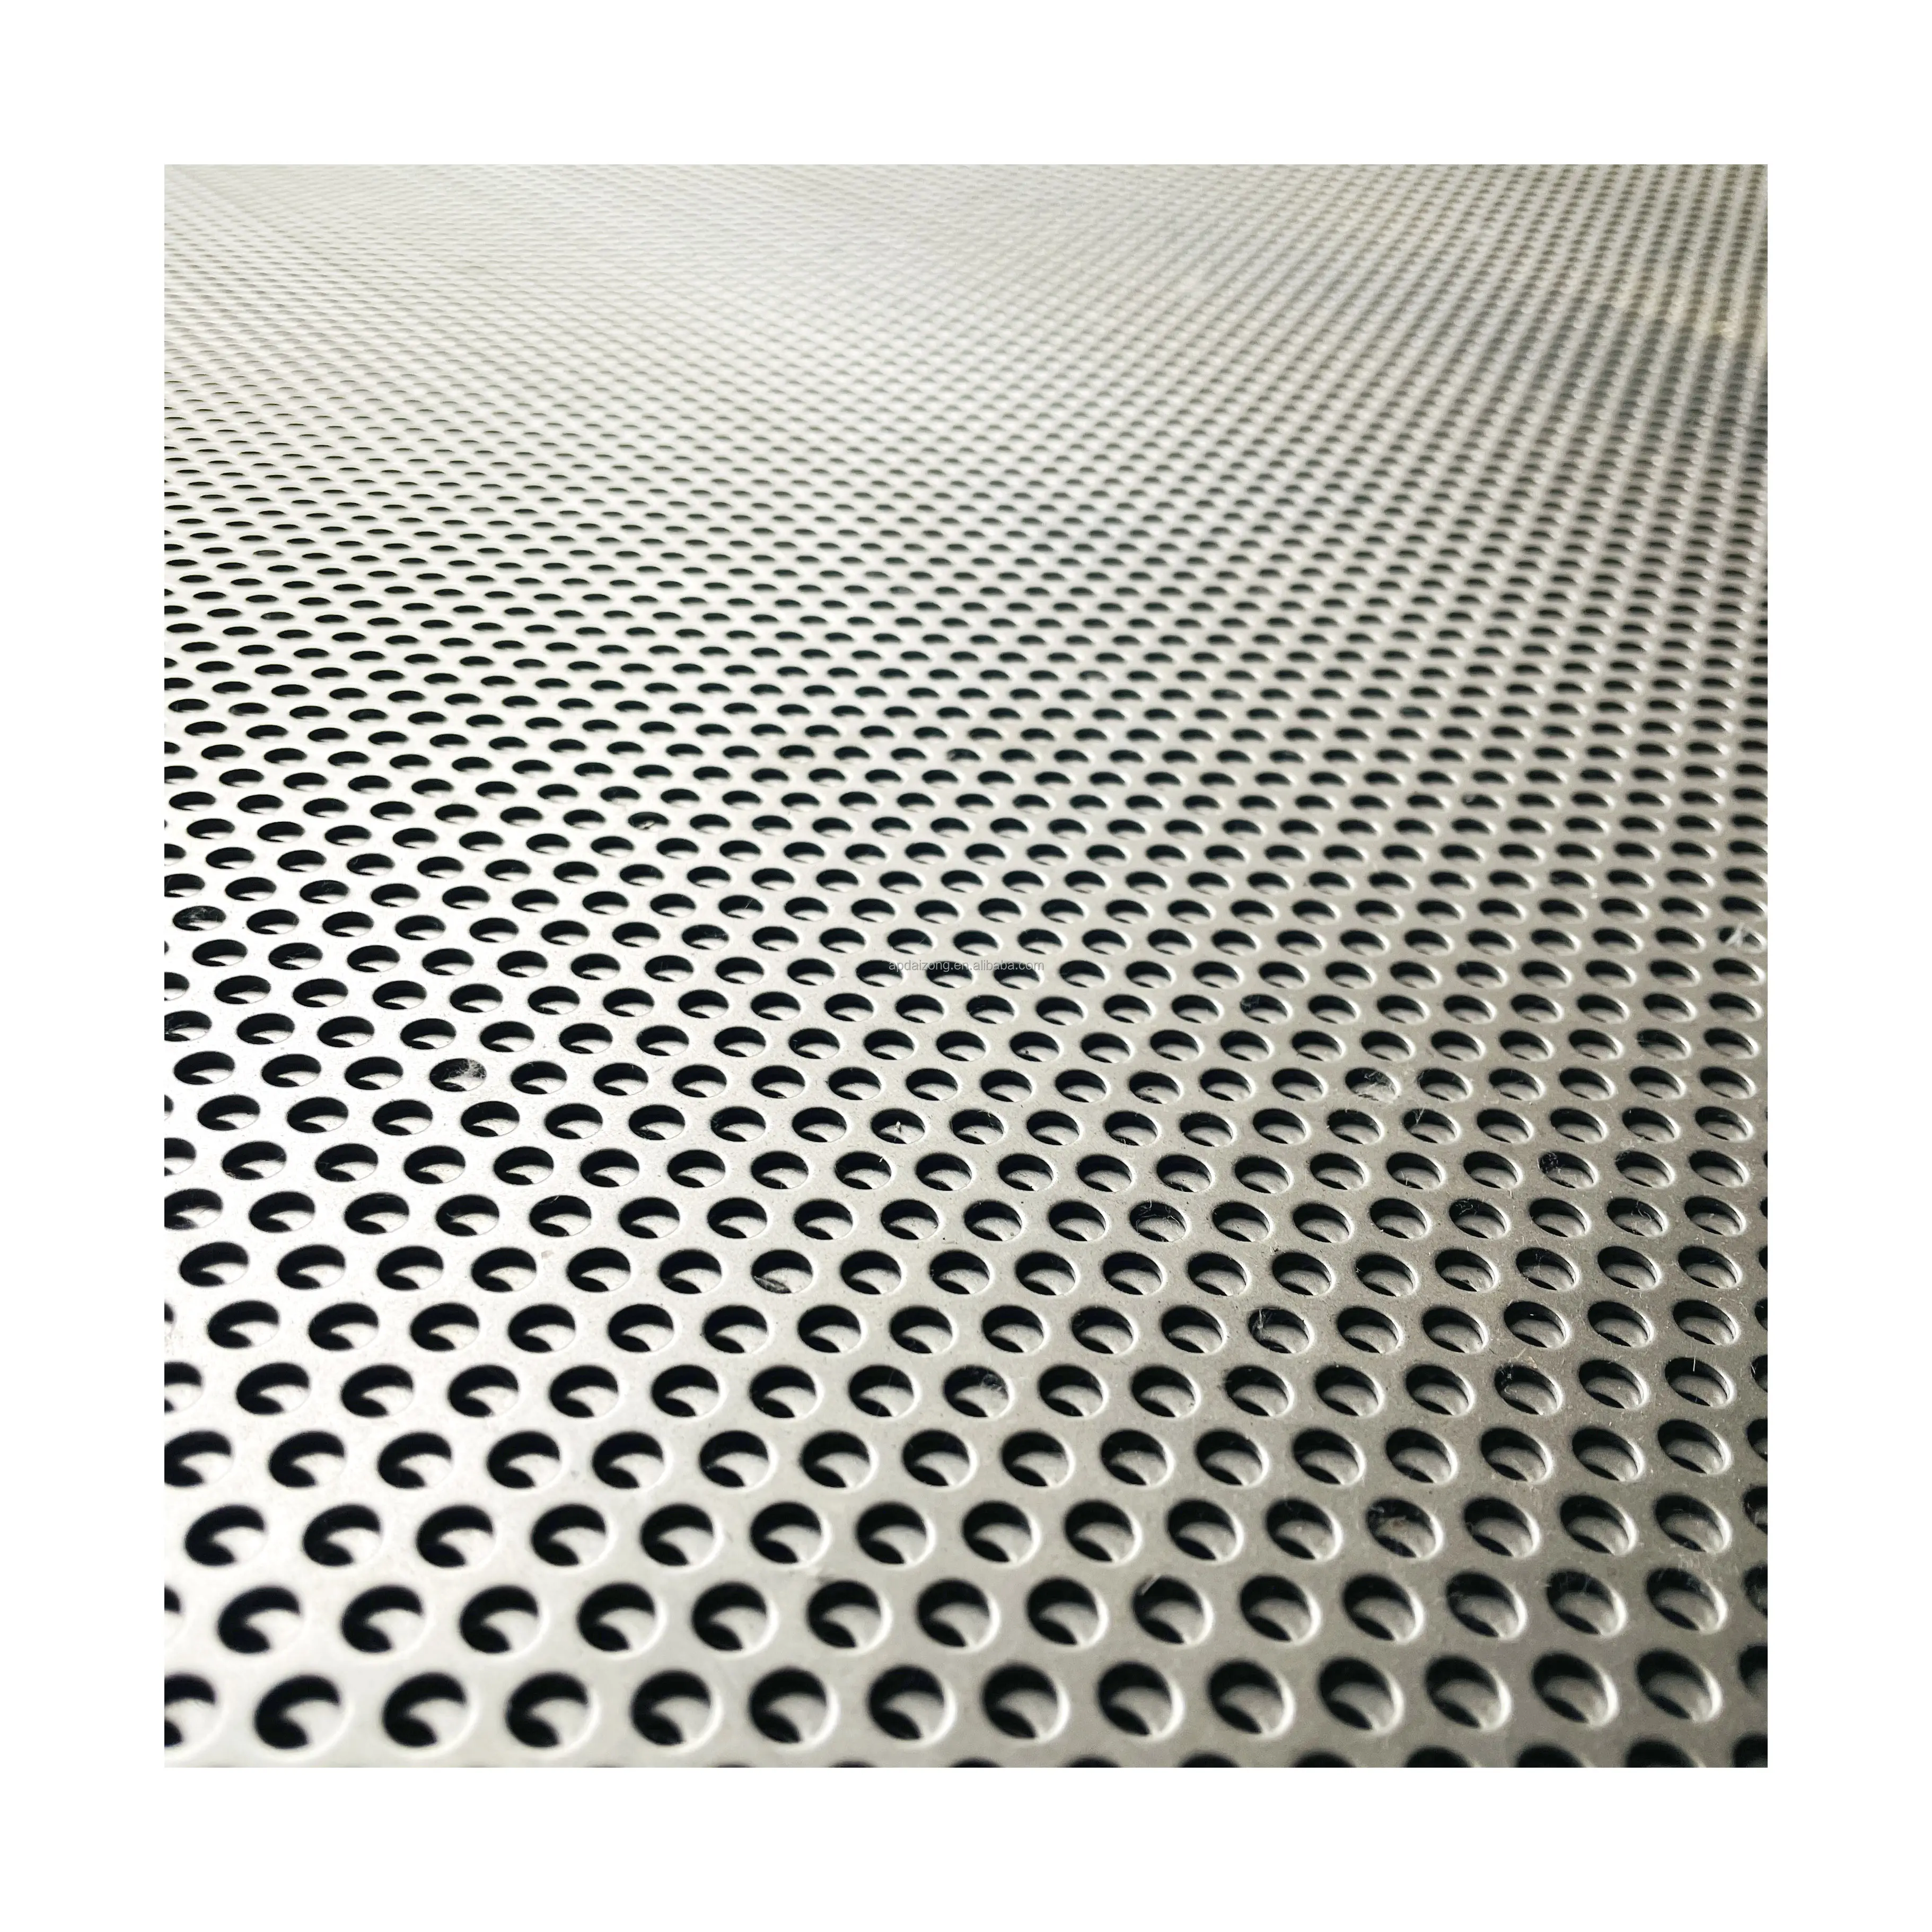 Malla perforada metálica de exportación caliente de China con varios tipos de agujeros Hojas de malla metálica perforada con